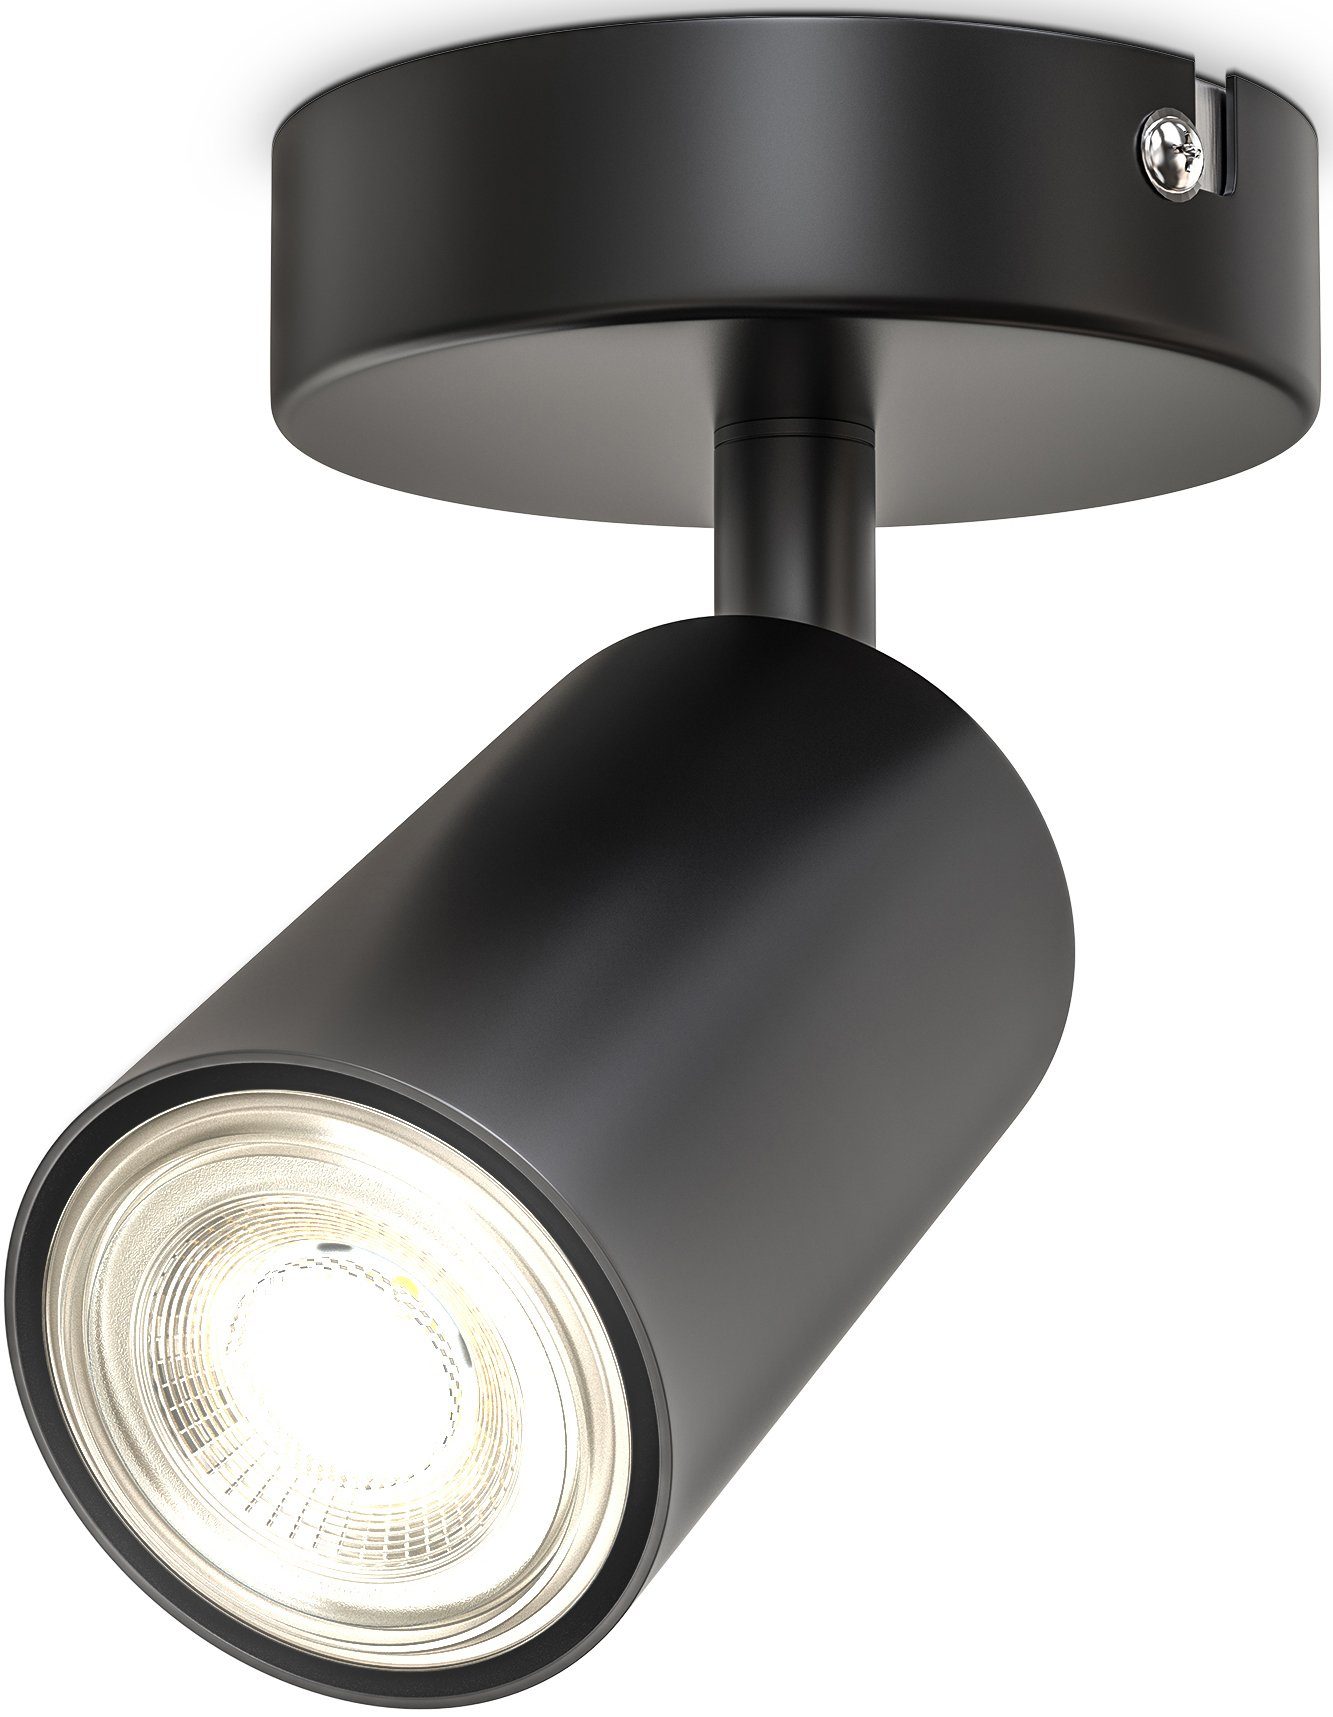 B.K.Licht Deckenspot, ohne Leuchtmittel, 1-flammige Spotlampe, schwenkbar, drehbar, schwarz, ohne Leuchtmittel | Deckenstrahler